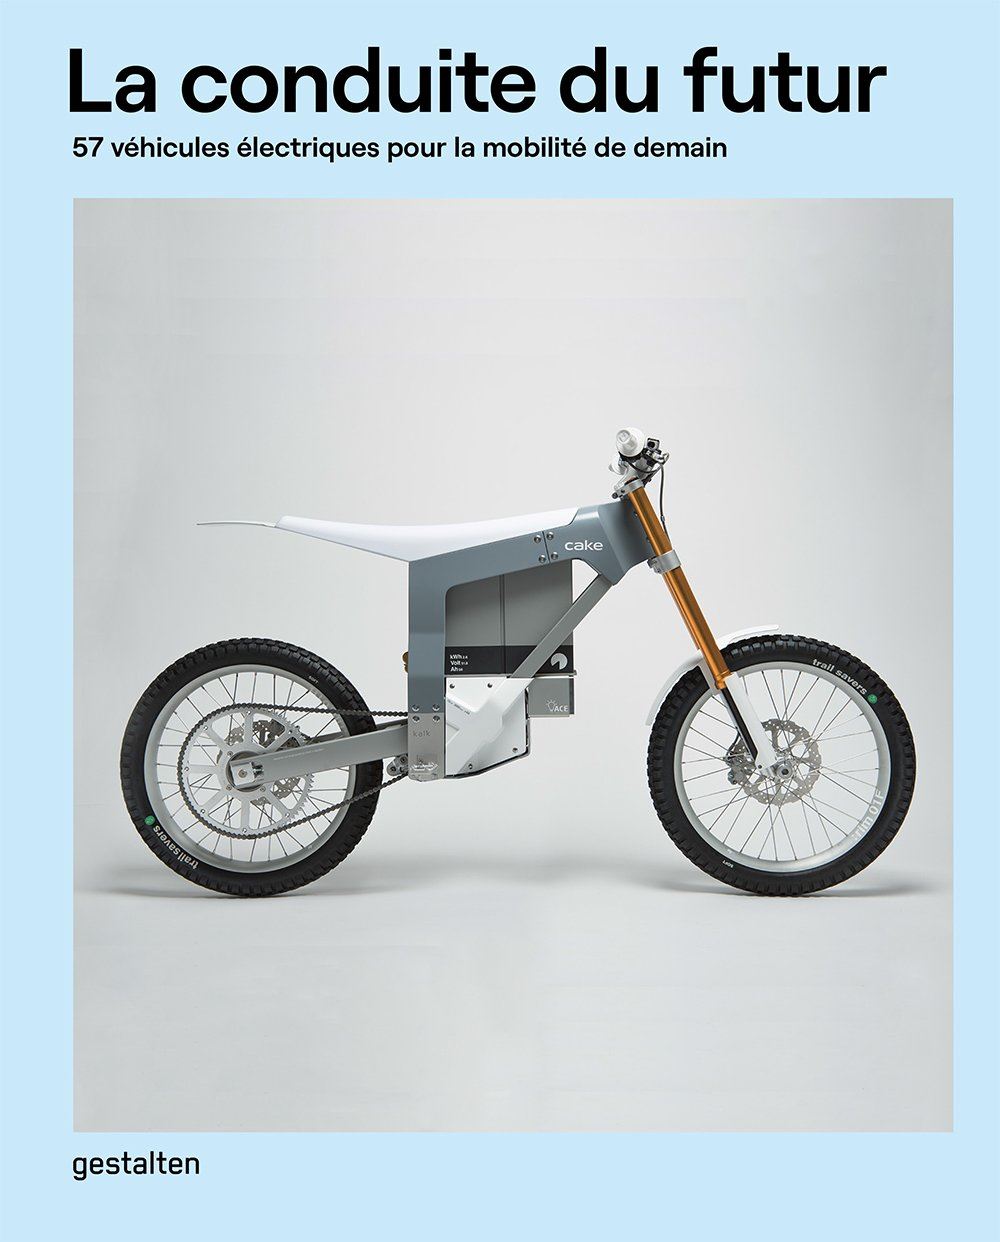 La conduite du futur : 57 véhicules électriques pour la mobilité de demain